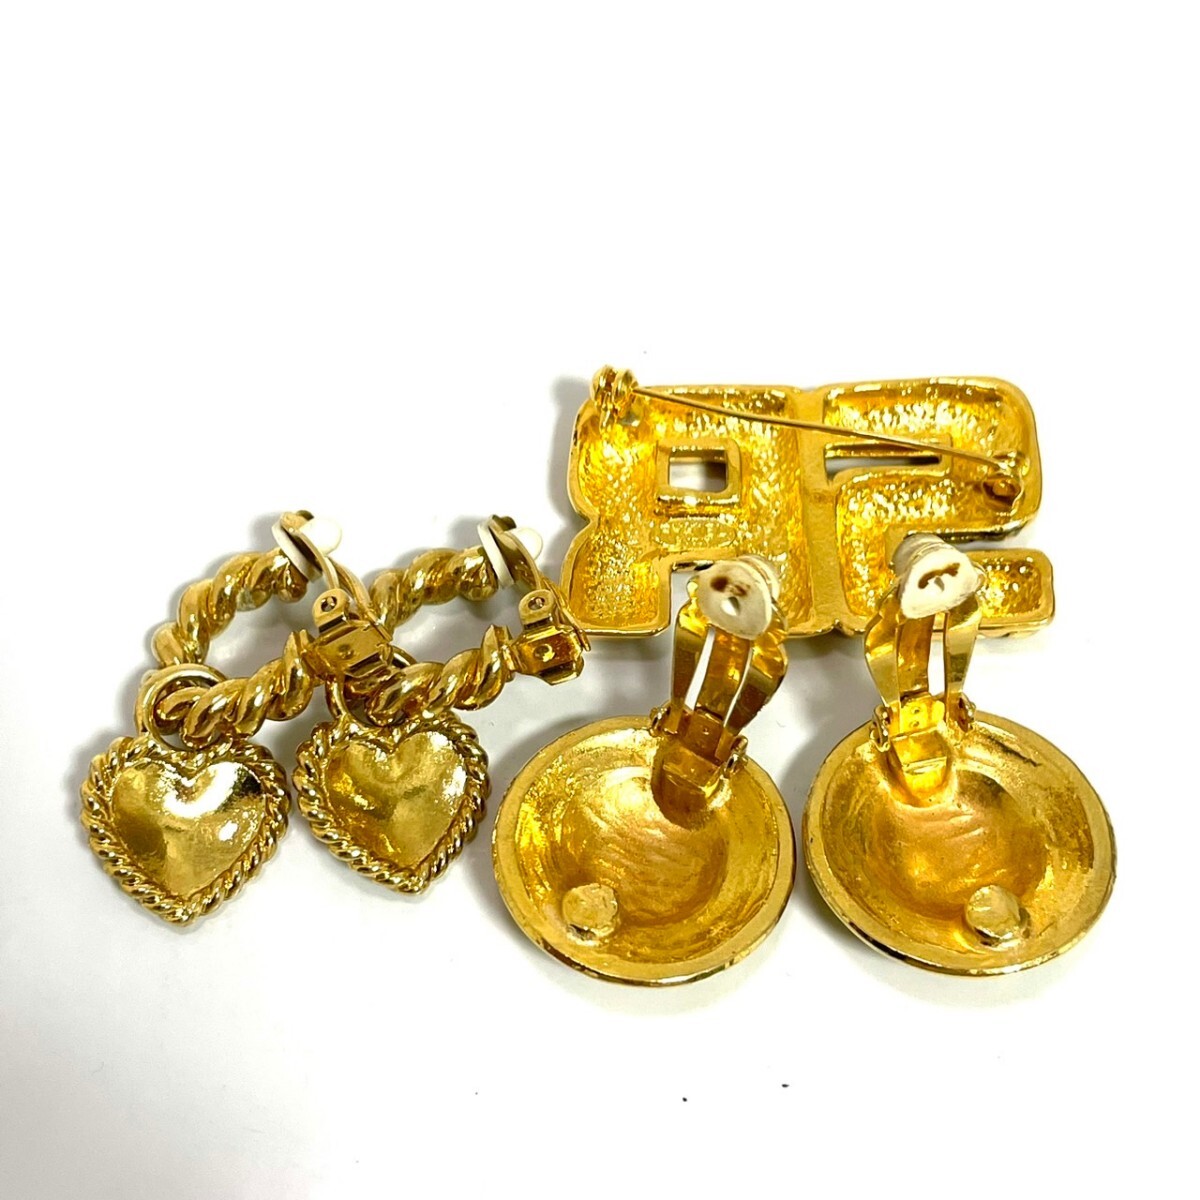 1 jpy start beautiful goods SONIA RYKIEL Sonia Rykiel earrings necklace brooch earrings accessory Gold Vintage summarize 